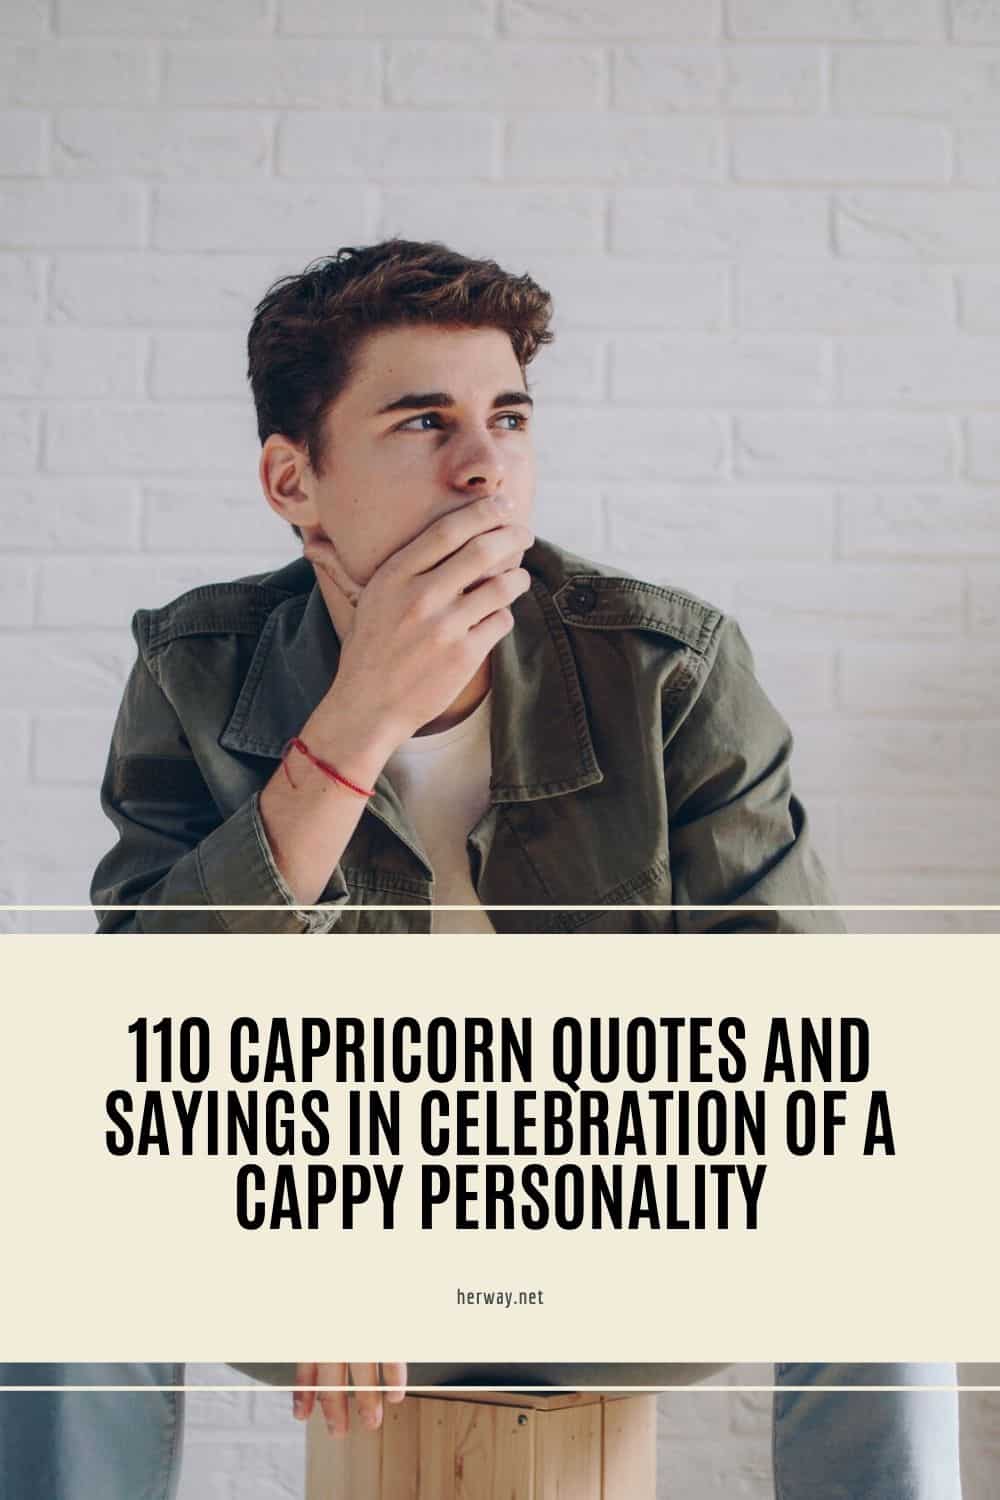 110 Citazioni e frasi sul Capricorno per celebrare la personalità del Cappy